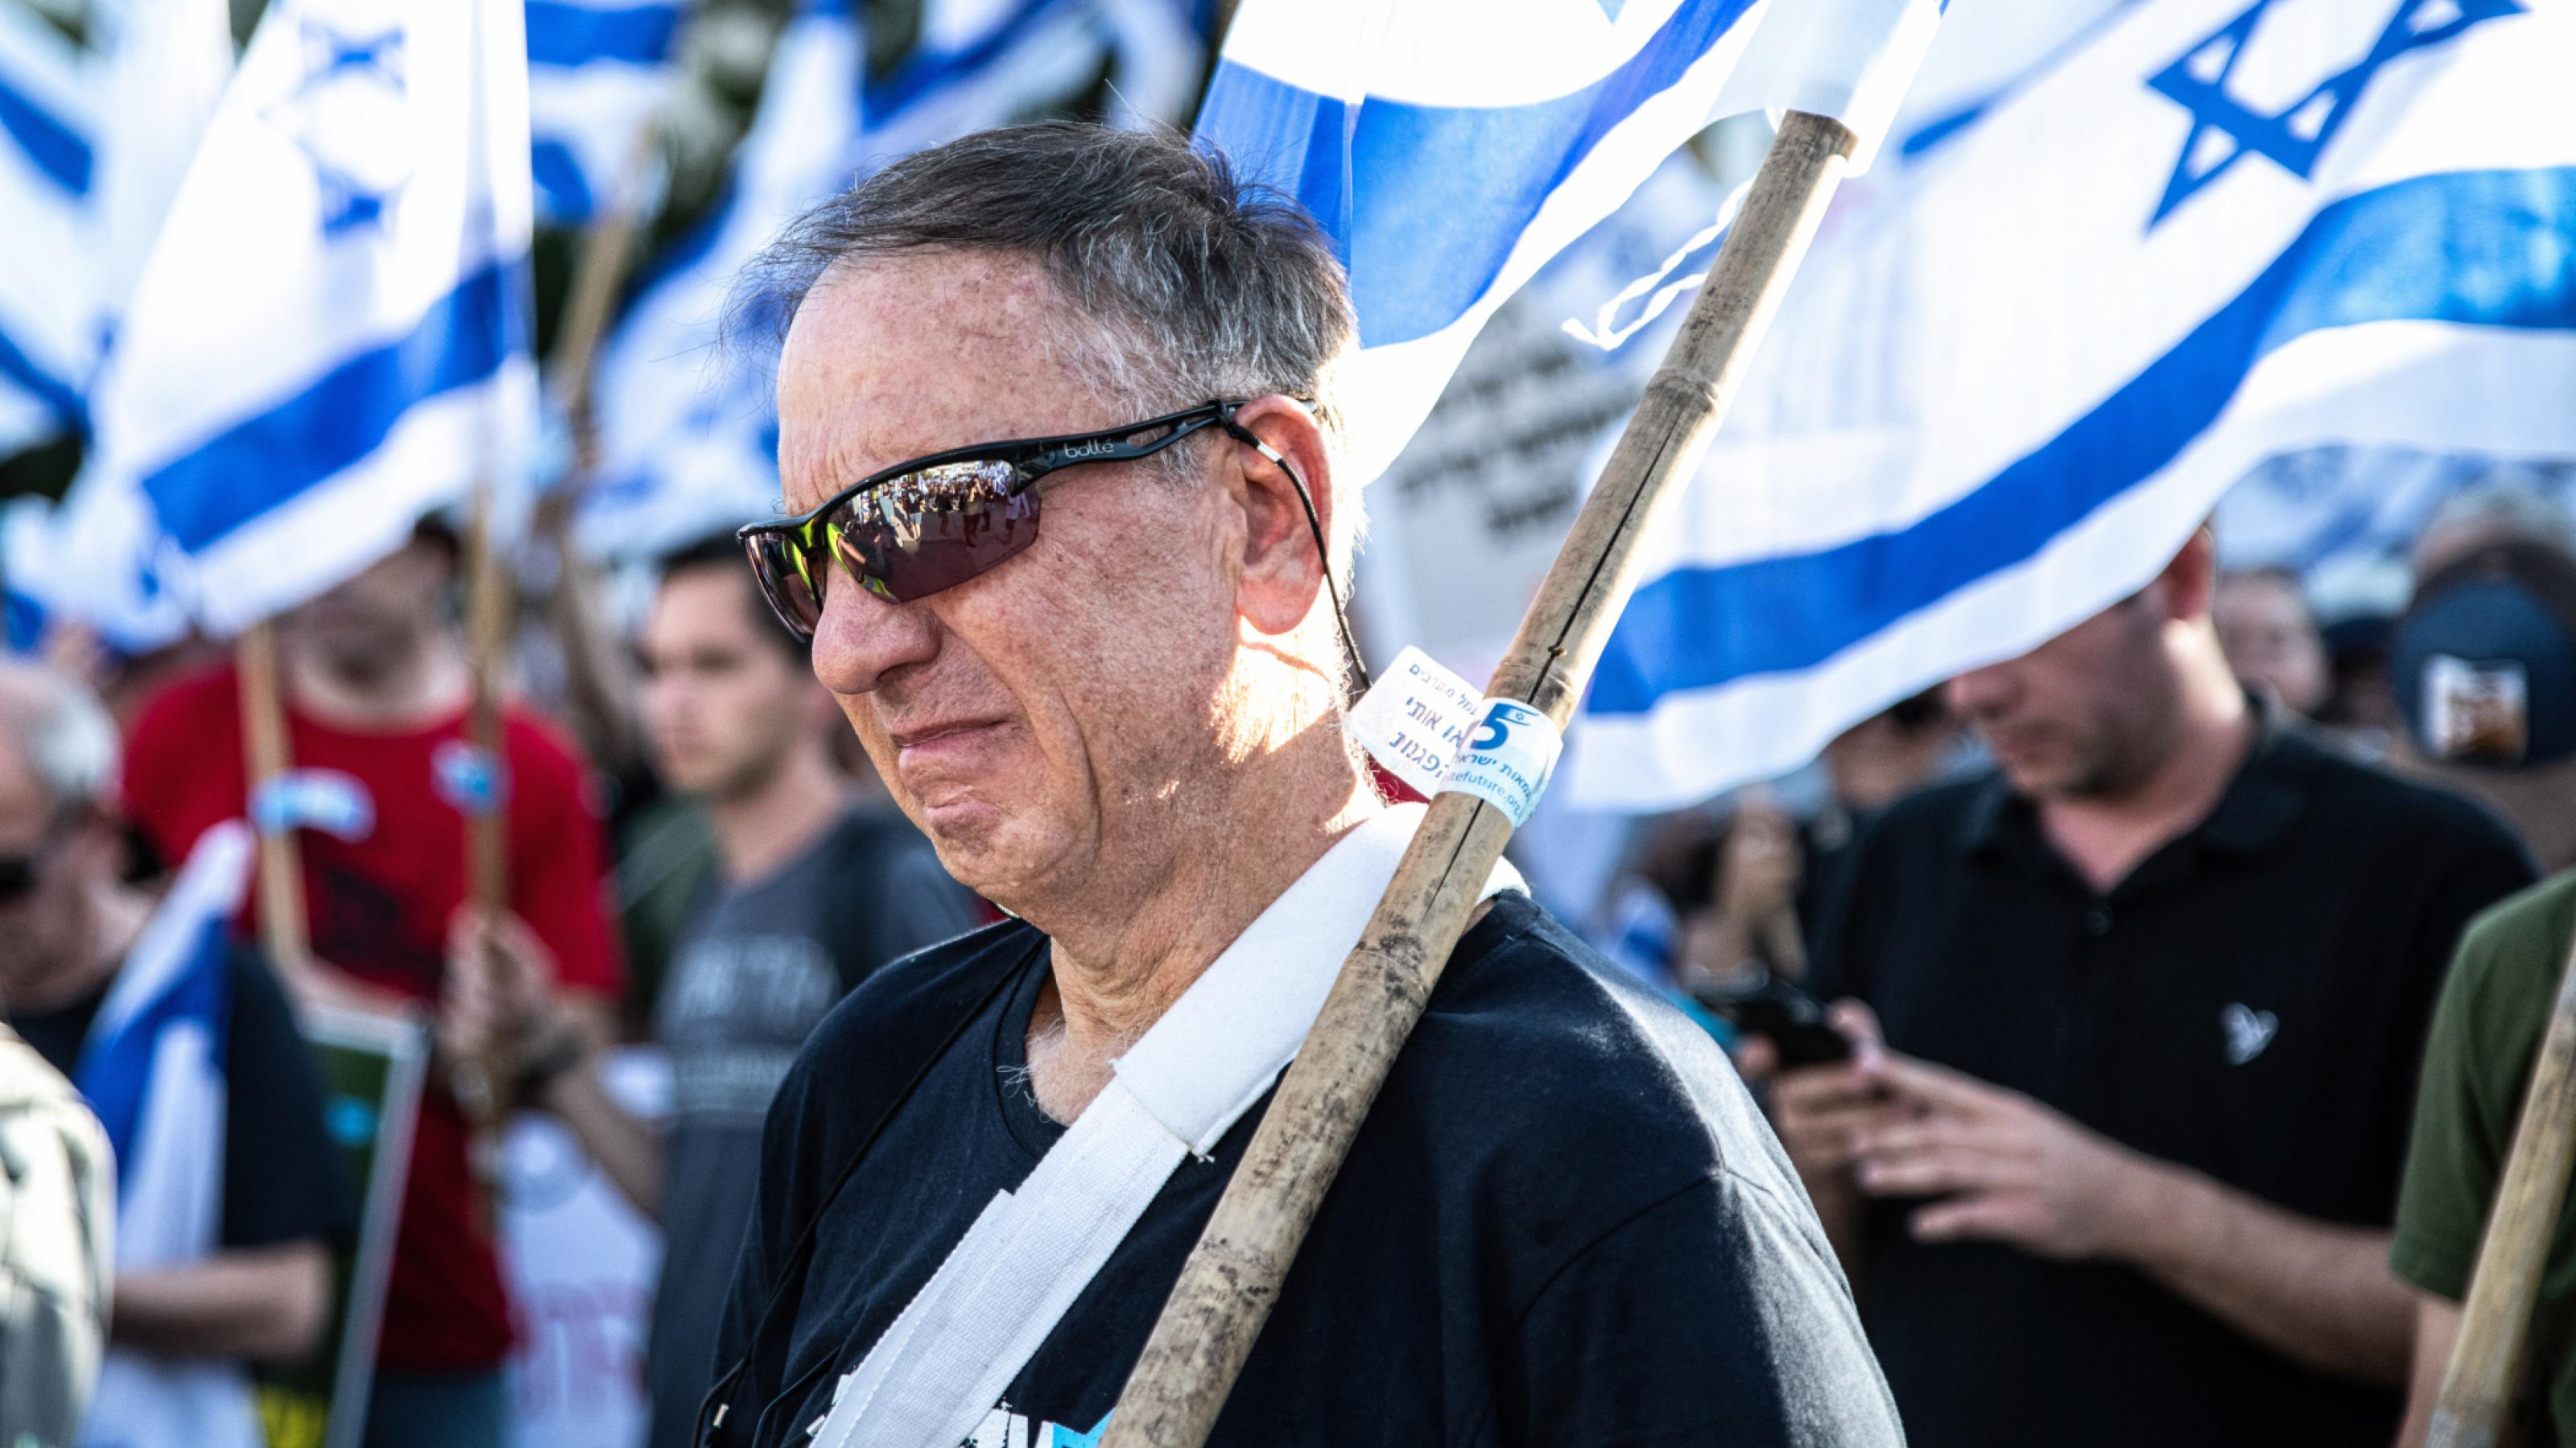 Asaf Agmon in Tränen, umgeben von vielen israelischen Flaggen